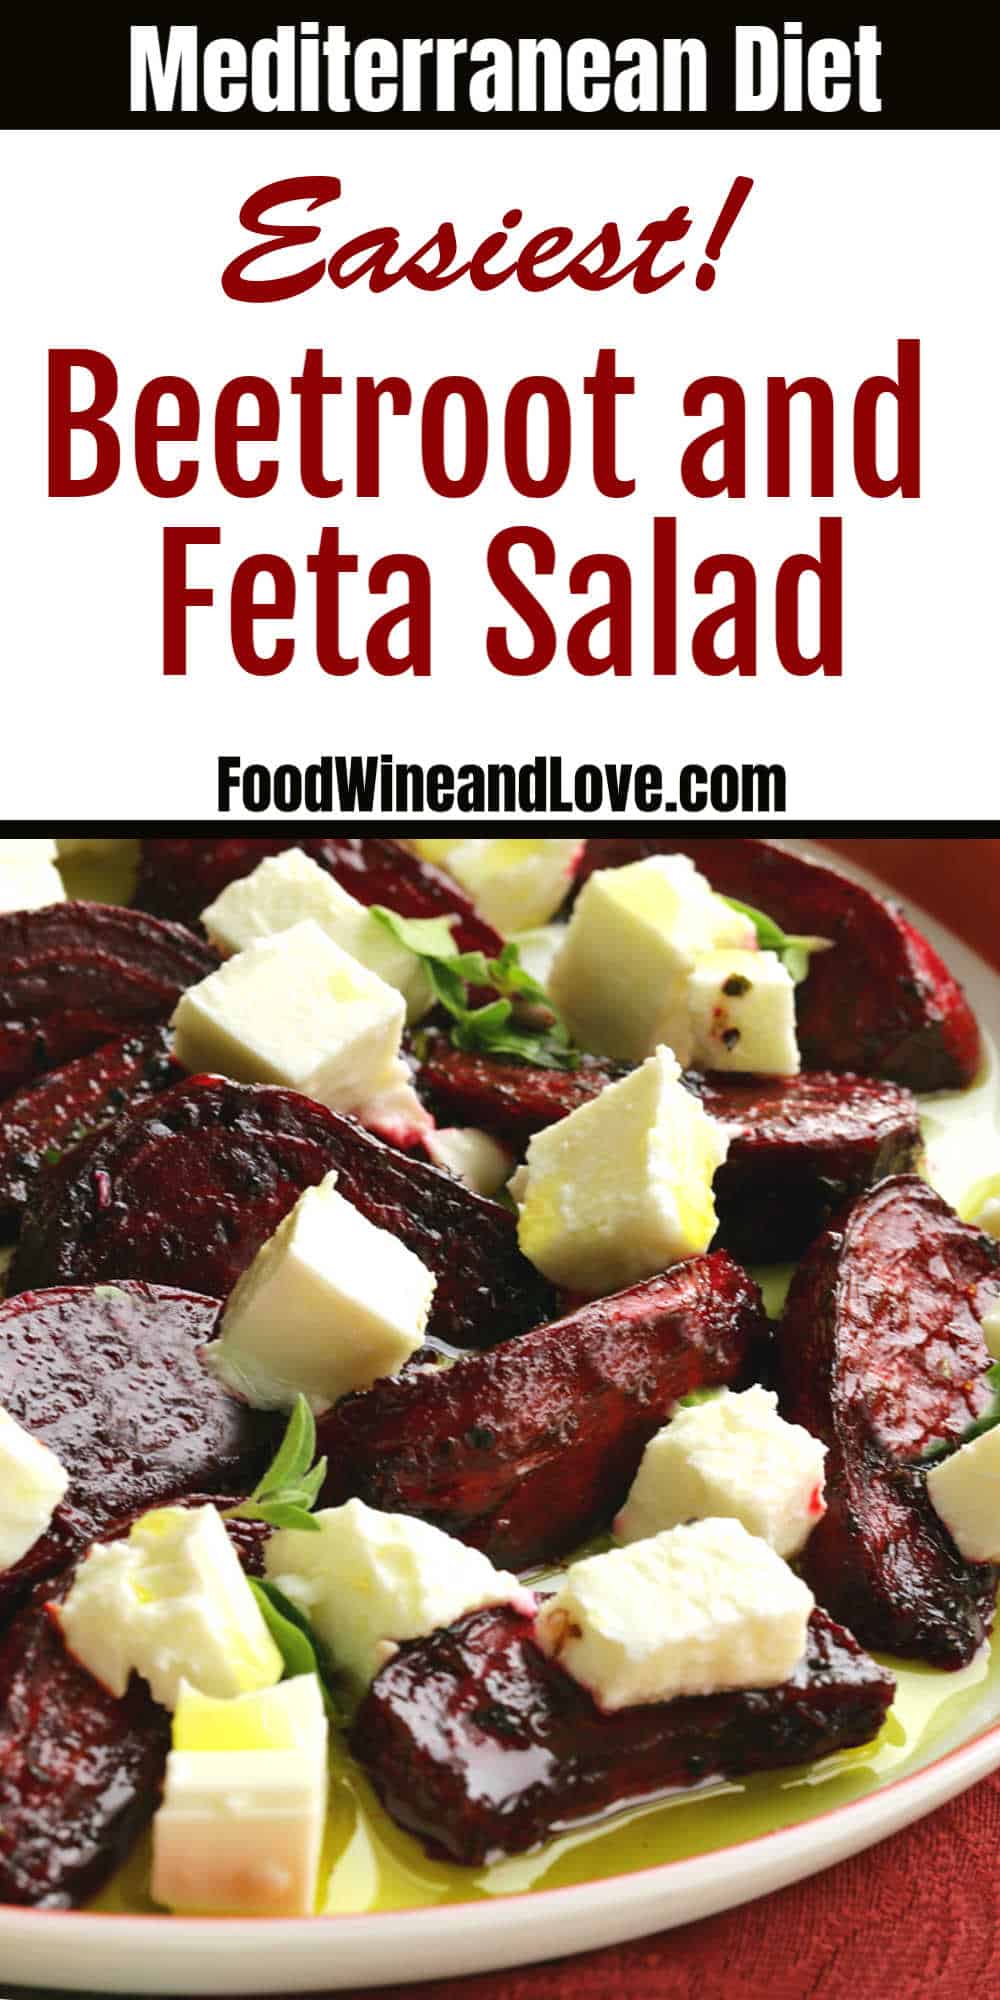 Roasted Beetroot and Feta Salad